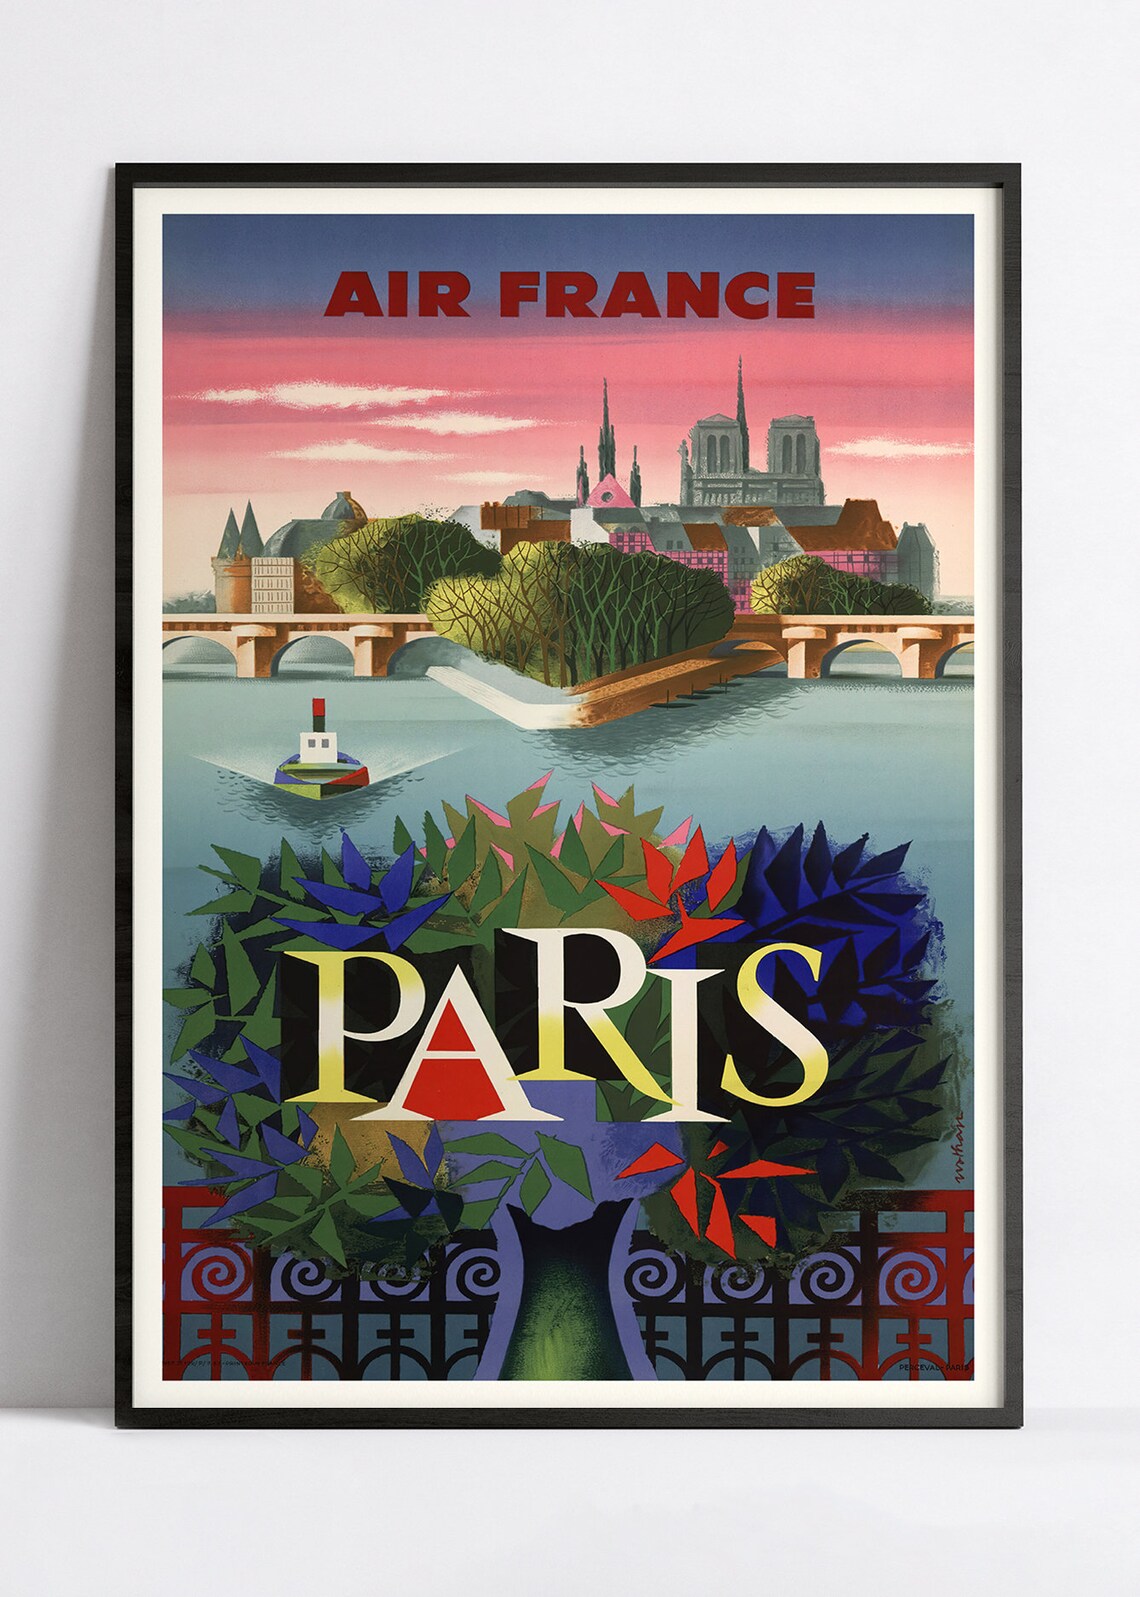 Vintage-Wandplakat „Paris“ – Air France – High Definition – mattes Papier 230 g/m²